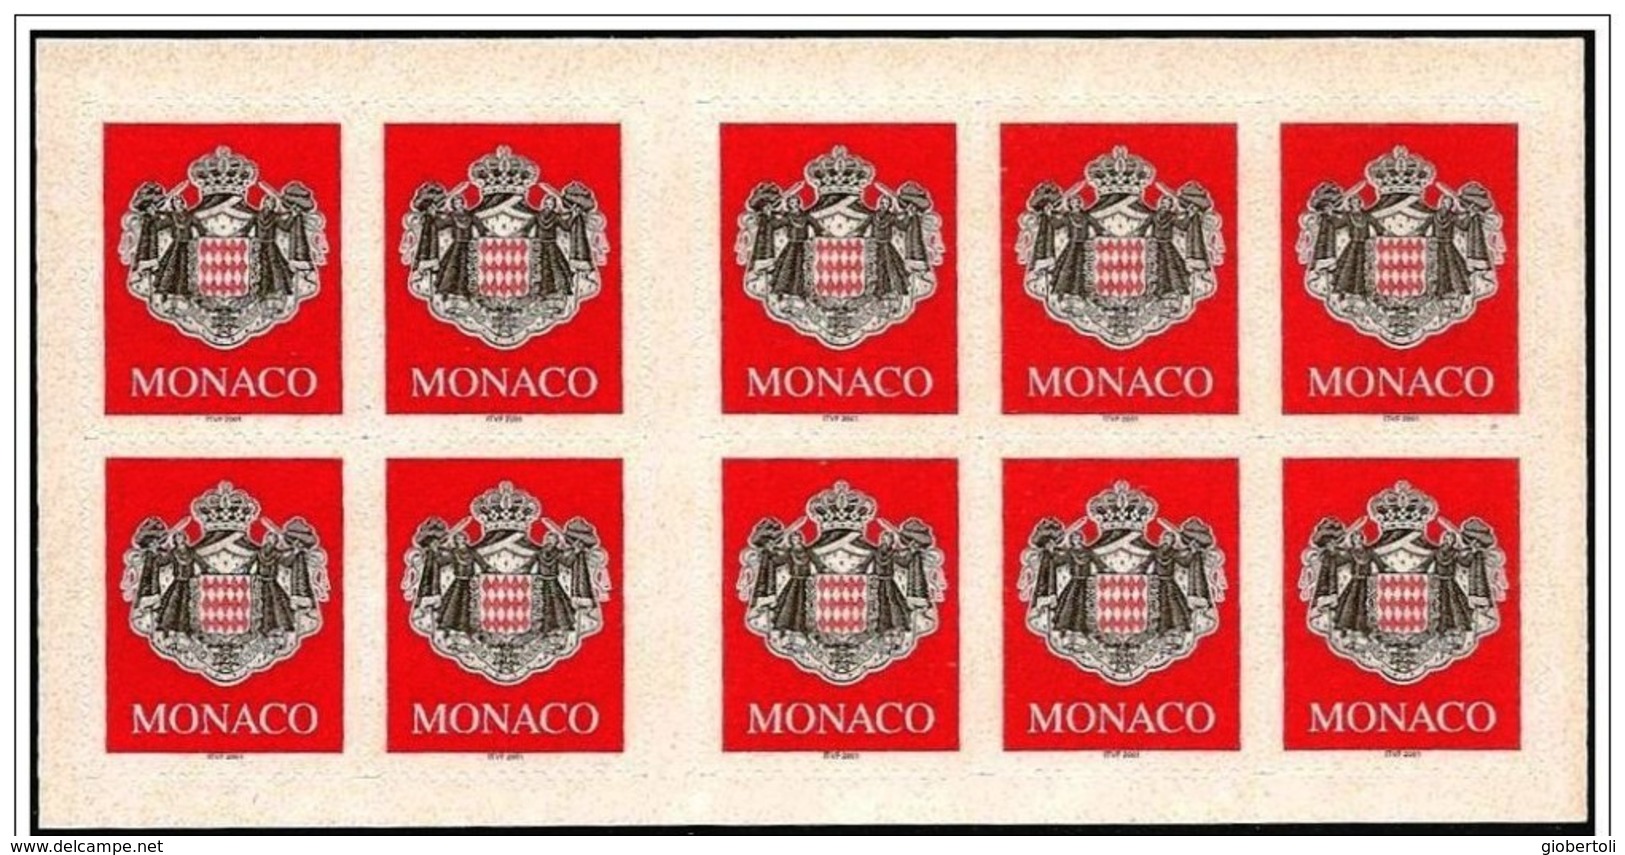 Monaco: Stemma, Armoiries, Coat Of Arms, Foglietto, Block, Bloc, Libretto, Carnet - Sellos